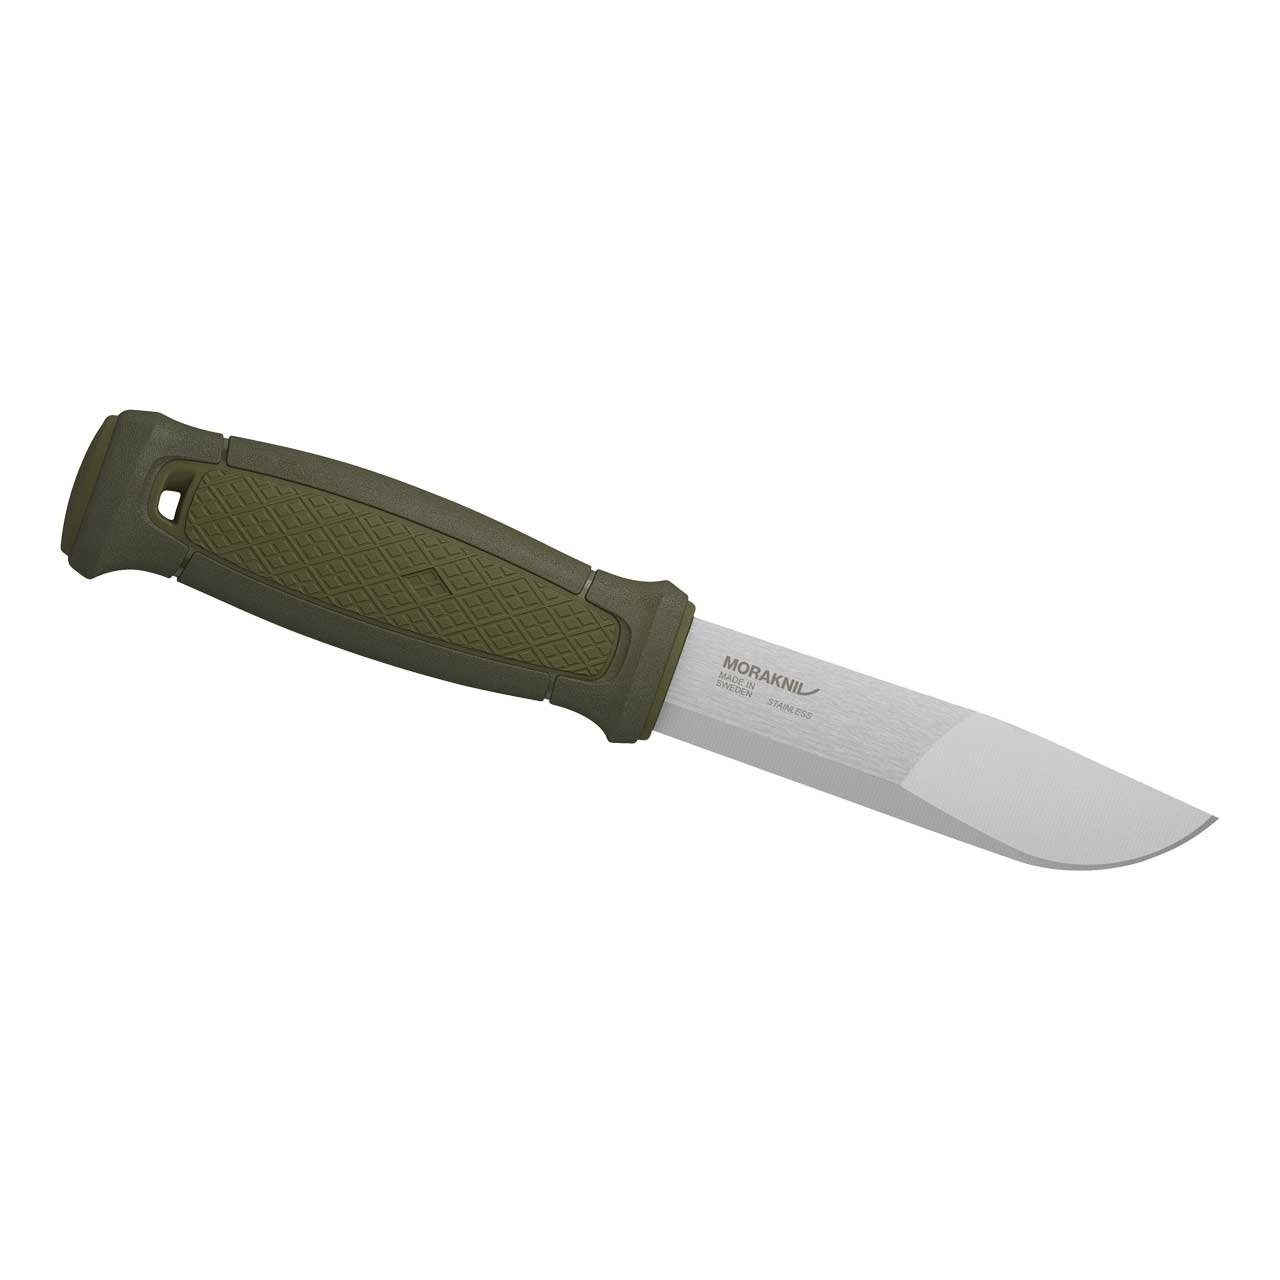 (1 St), Scheide Survival inklusive Feststehendes Morakniv KANSBOL Morakniv Messer Griff, Knife mit Kunststoff